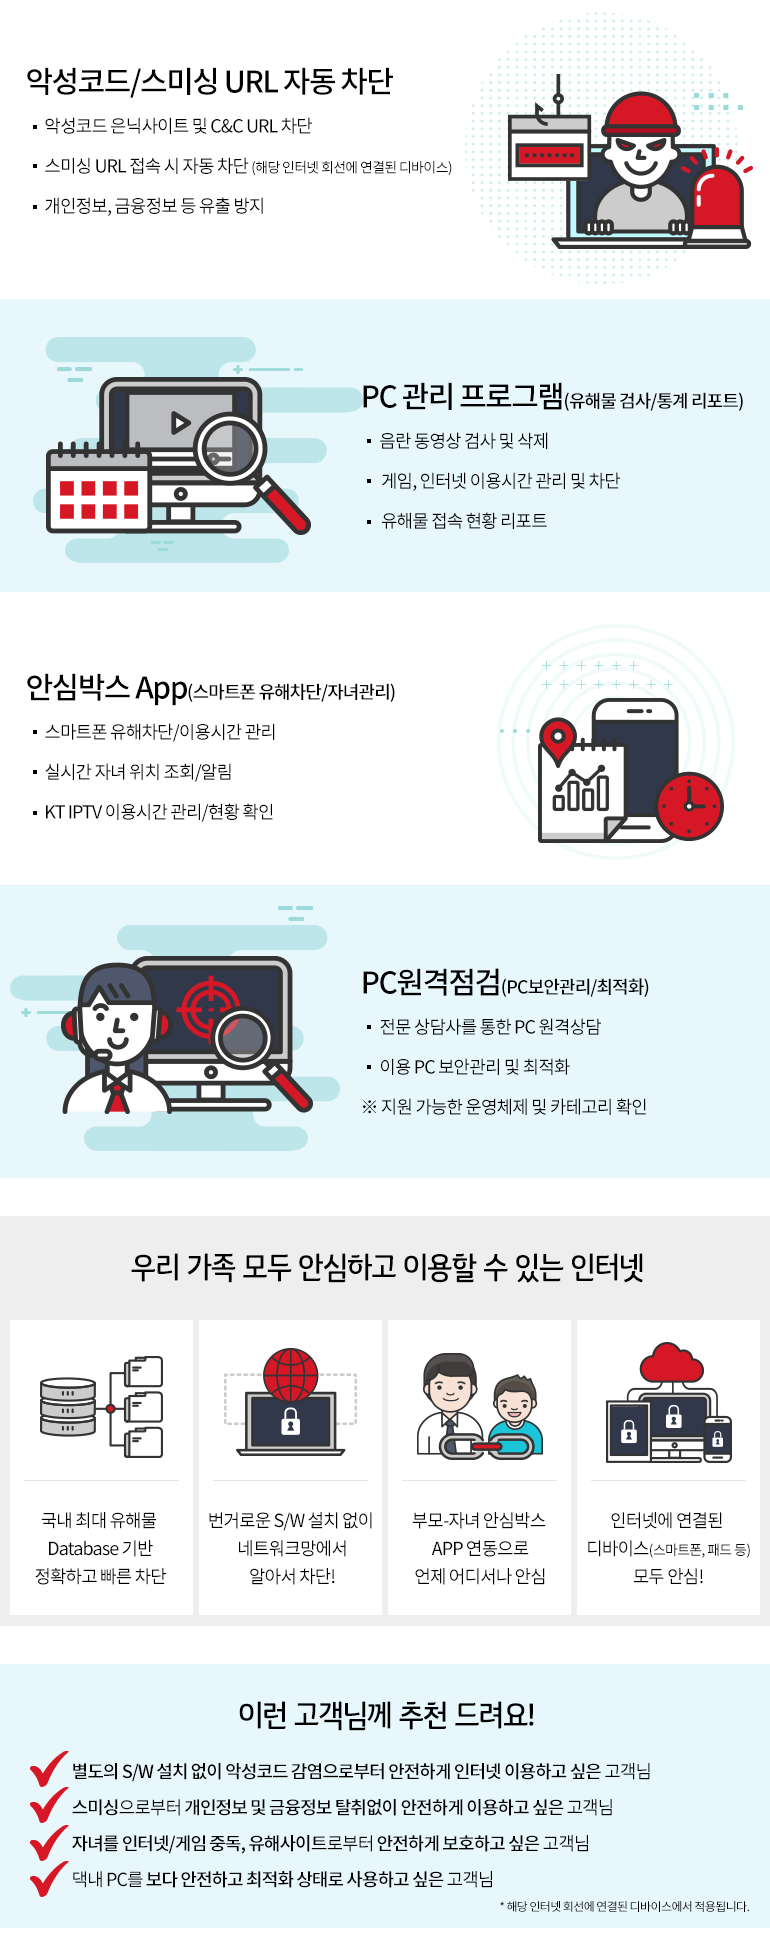 악성코드/스미싱 URL 자동차단 PC관리 프로그램 안심박스App PC원격점검 소개